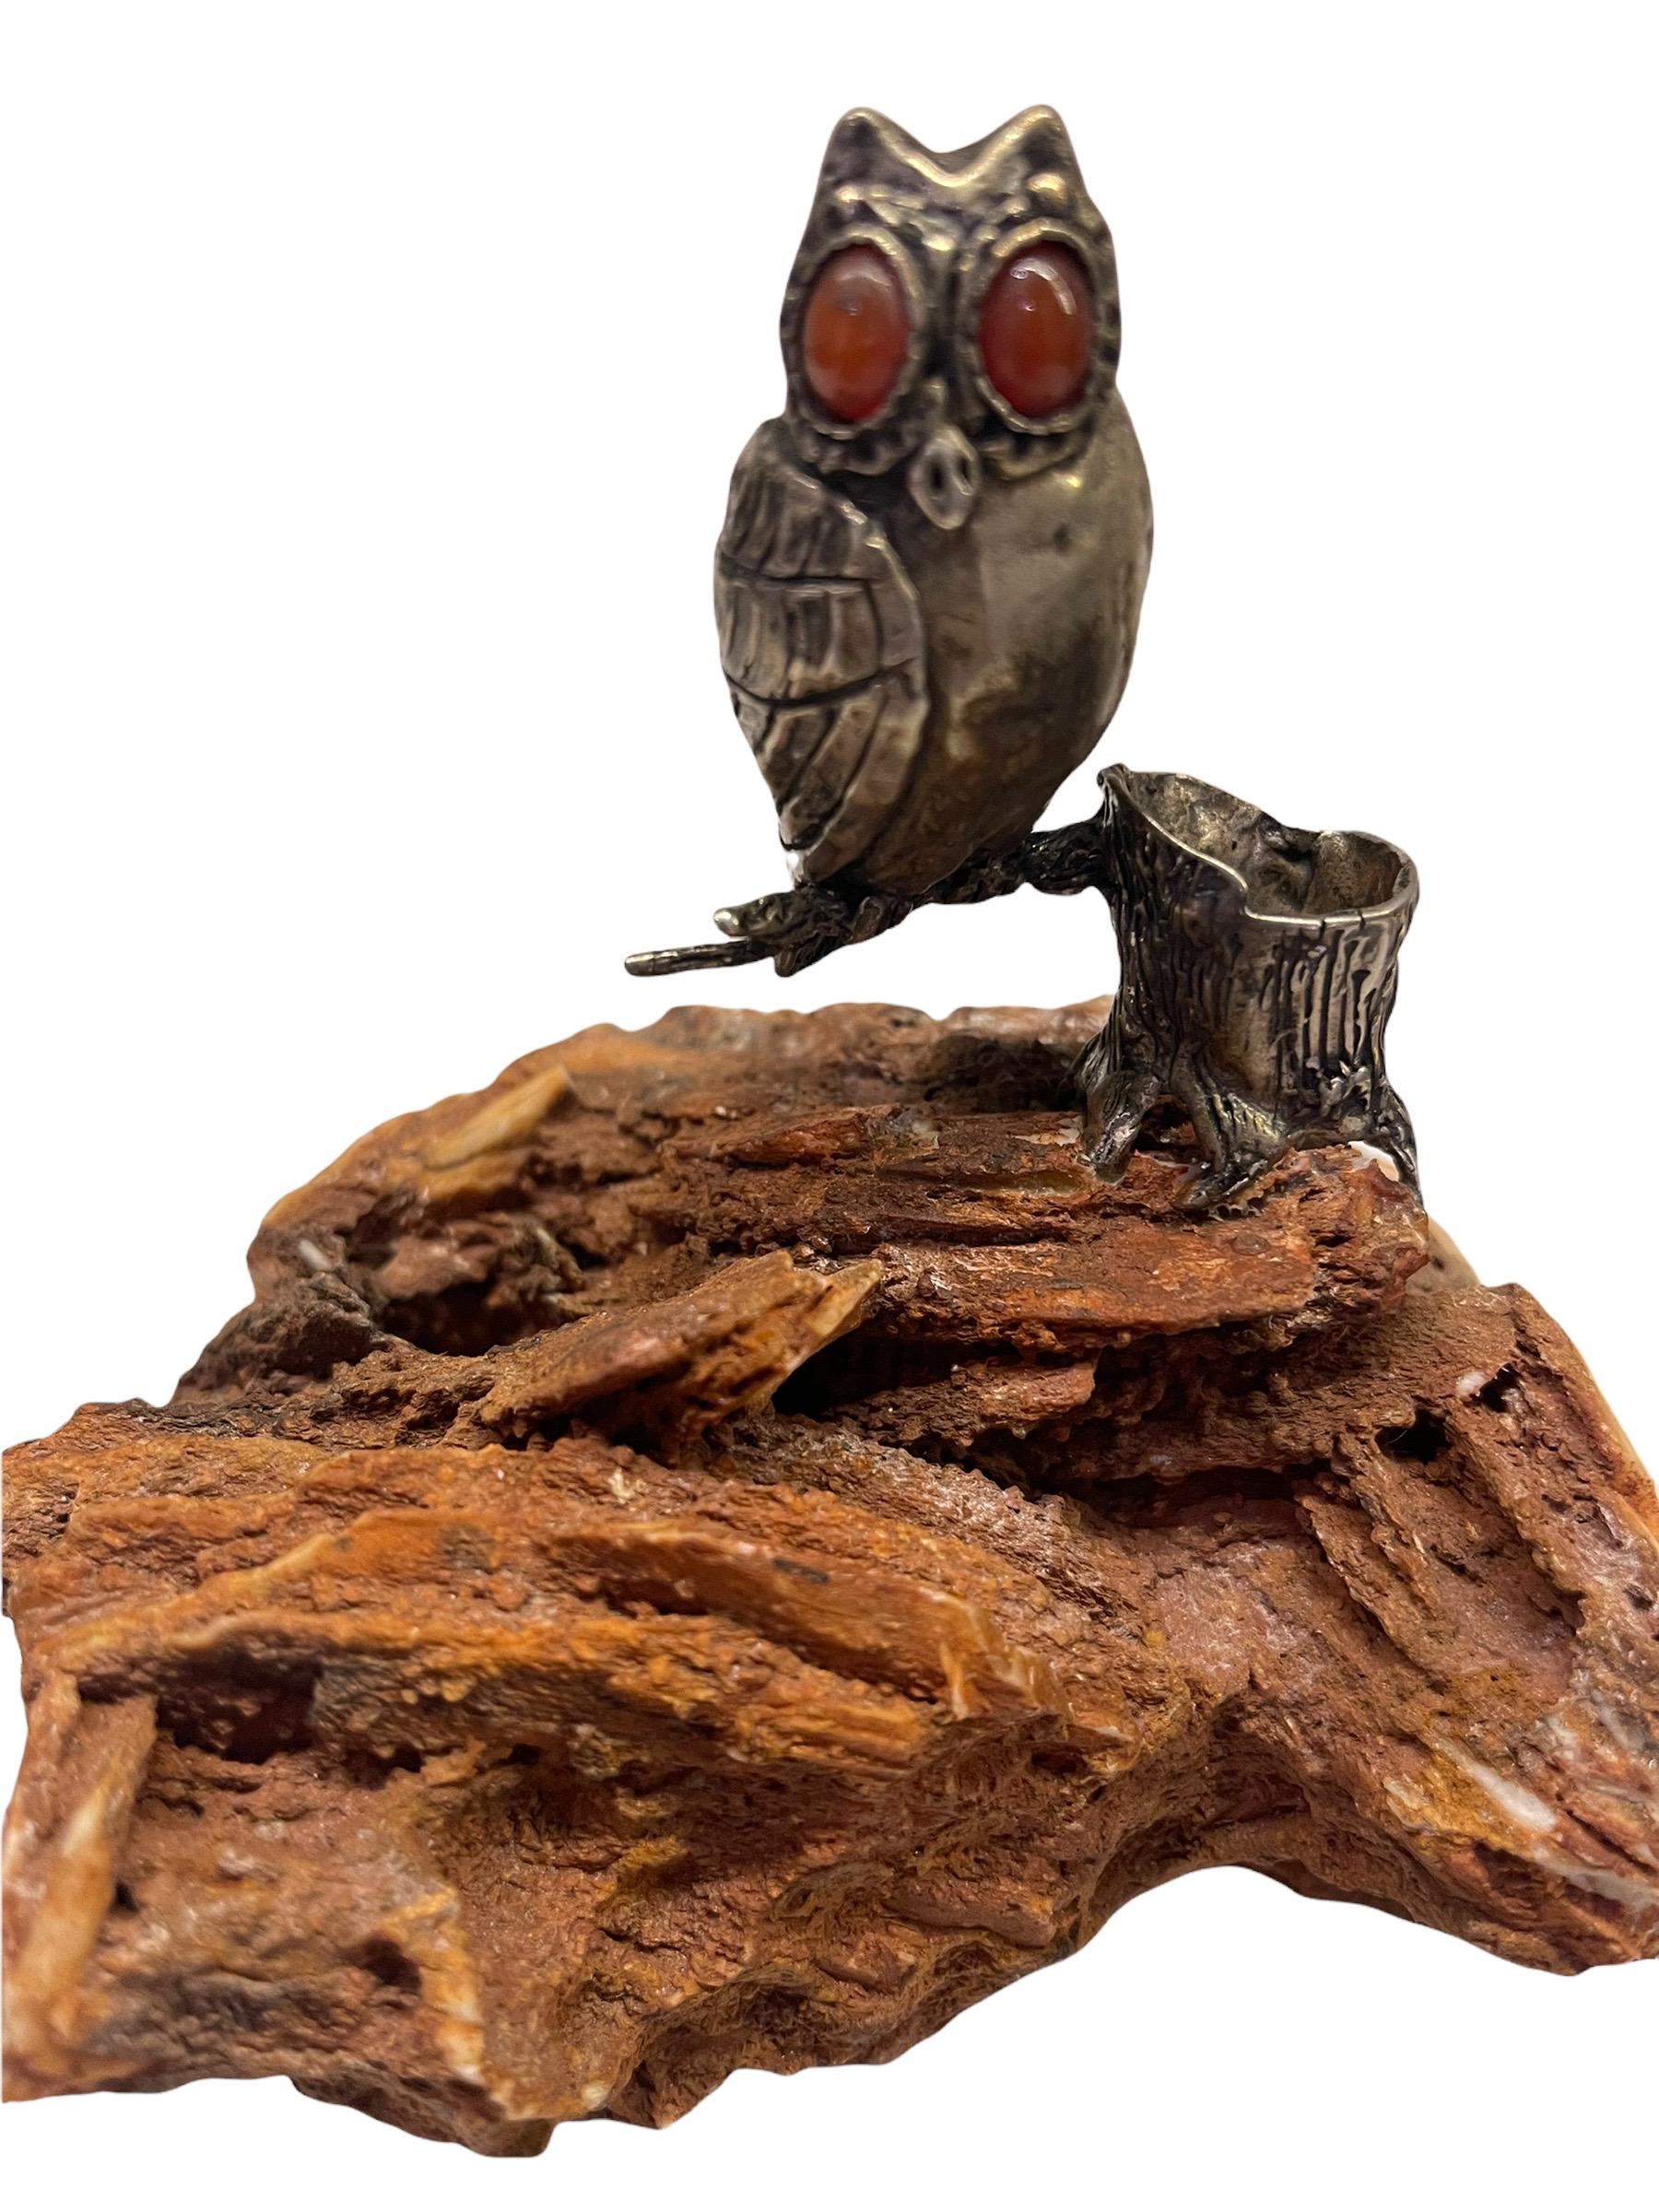 Figurine de chouette en argent Cartier du 20e siècle perchée sur un tronc. Il est marqué sur une plaque d'argent et monté sur un spécimen de minéral orange Creedite. Les yeux du hibou sont en pierre de Malachite.